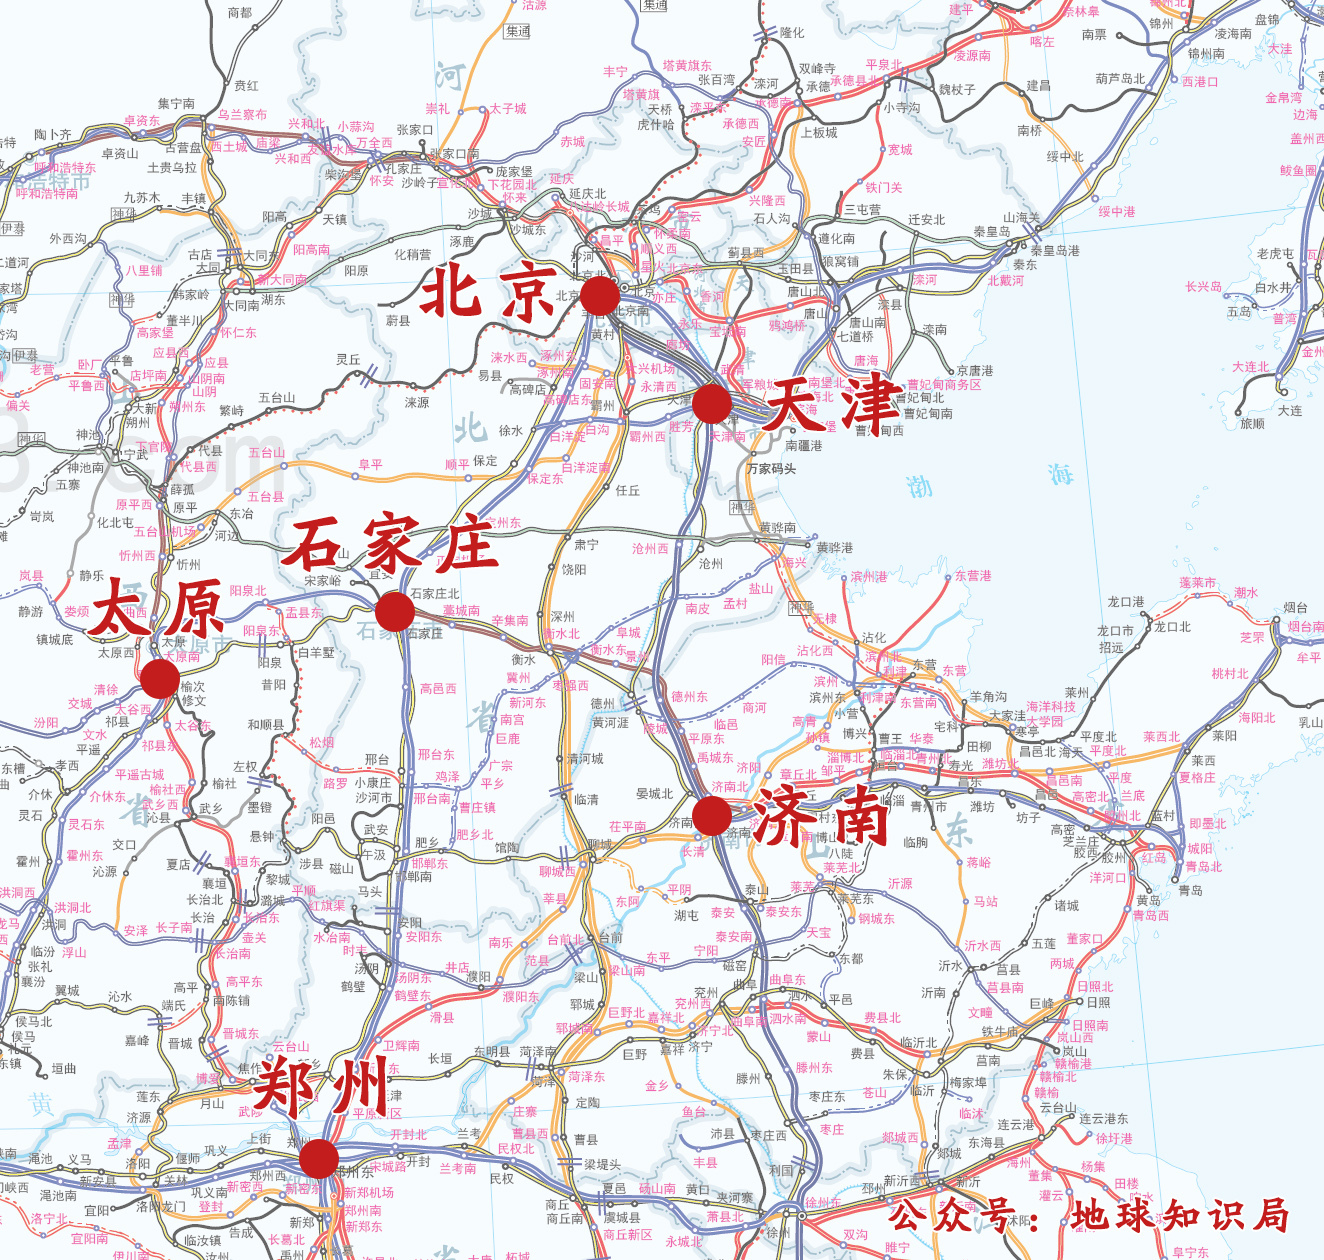 交汇的枢纽逐渐发展形成了众多知名的火车拉出来的城市,郑州,石家庄